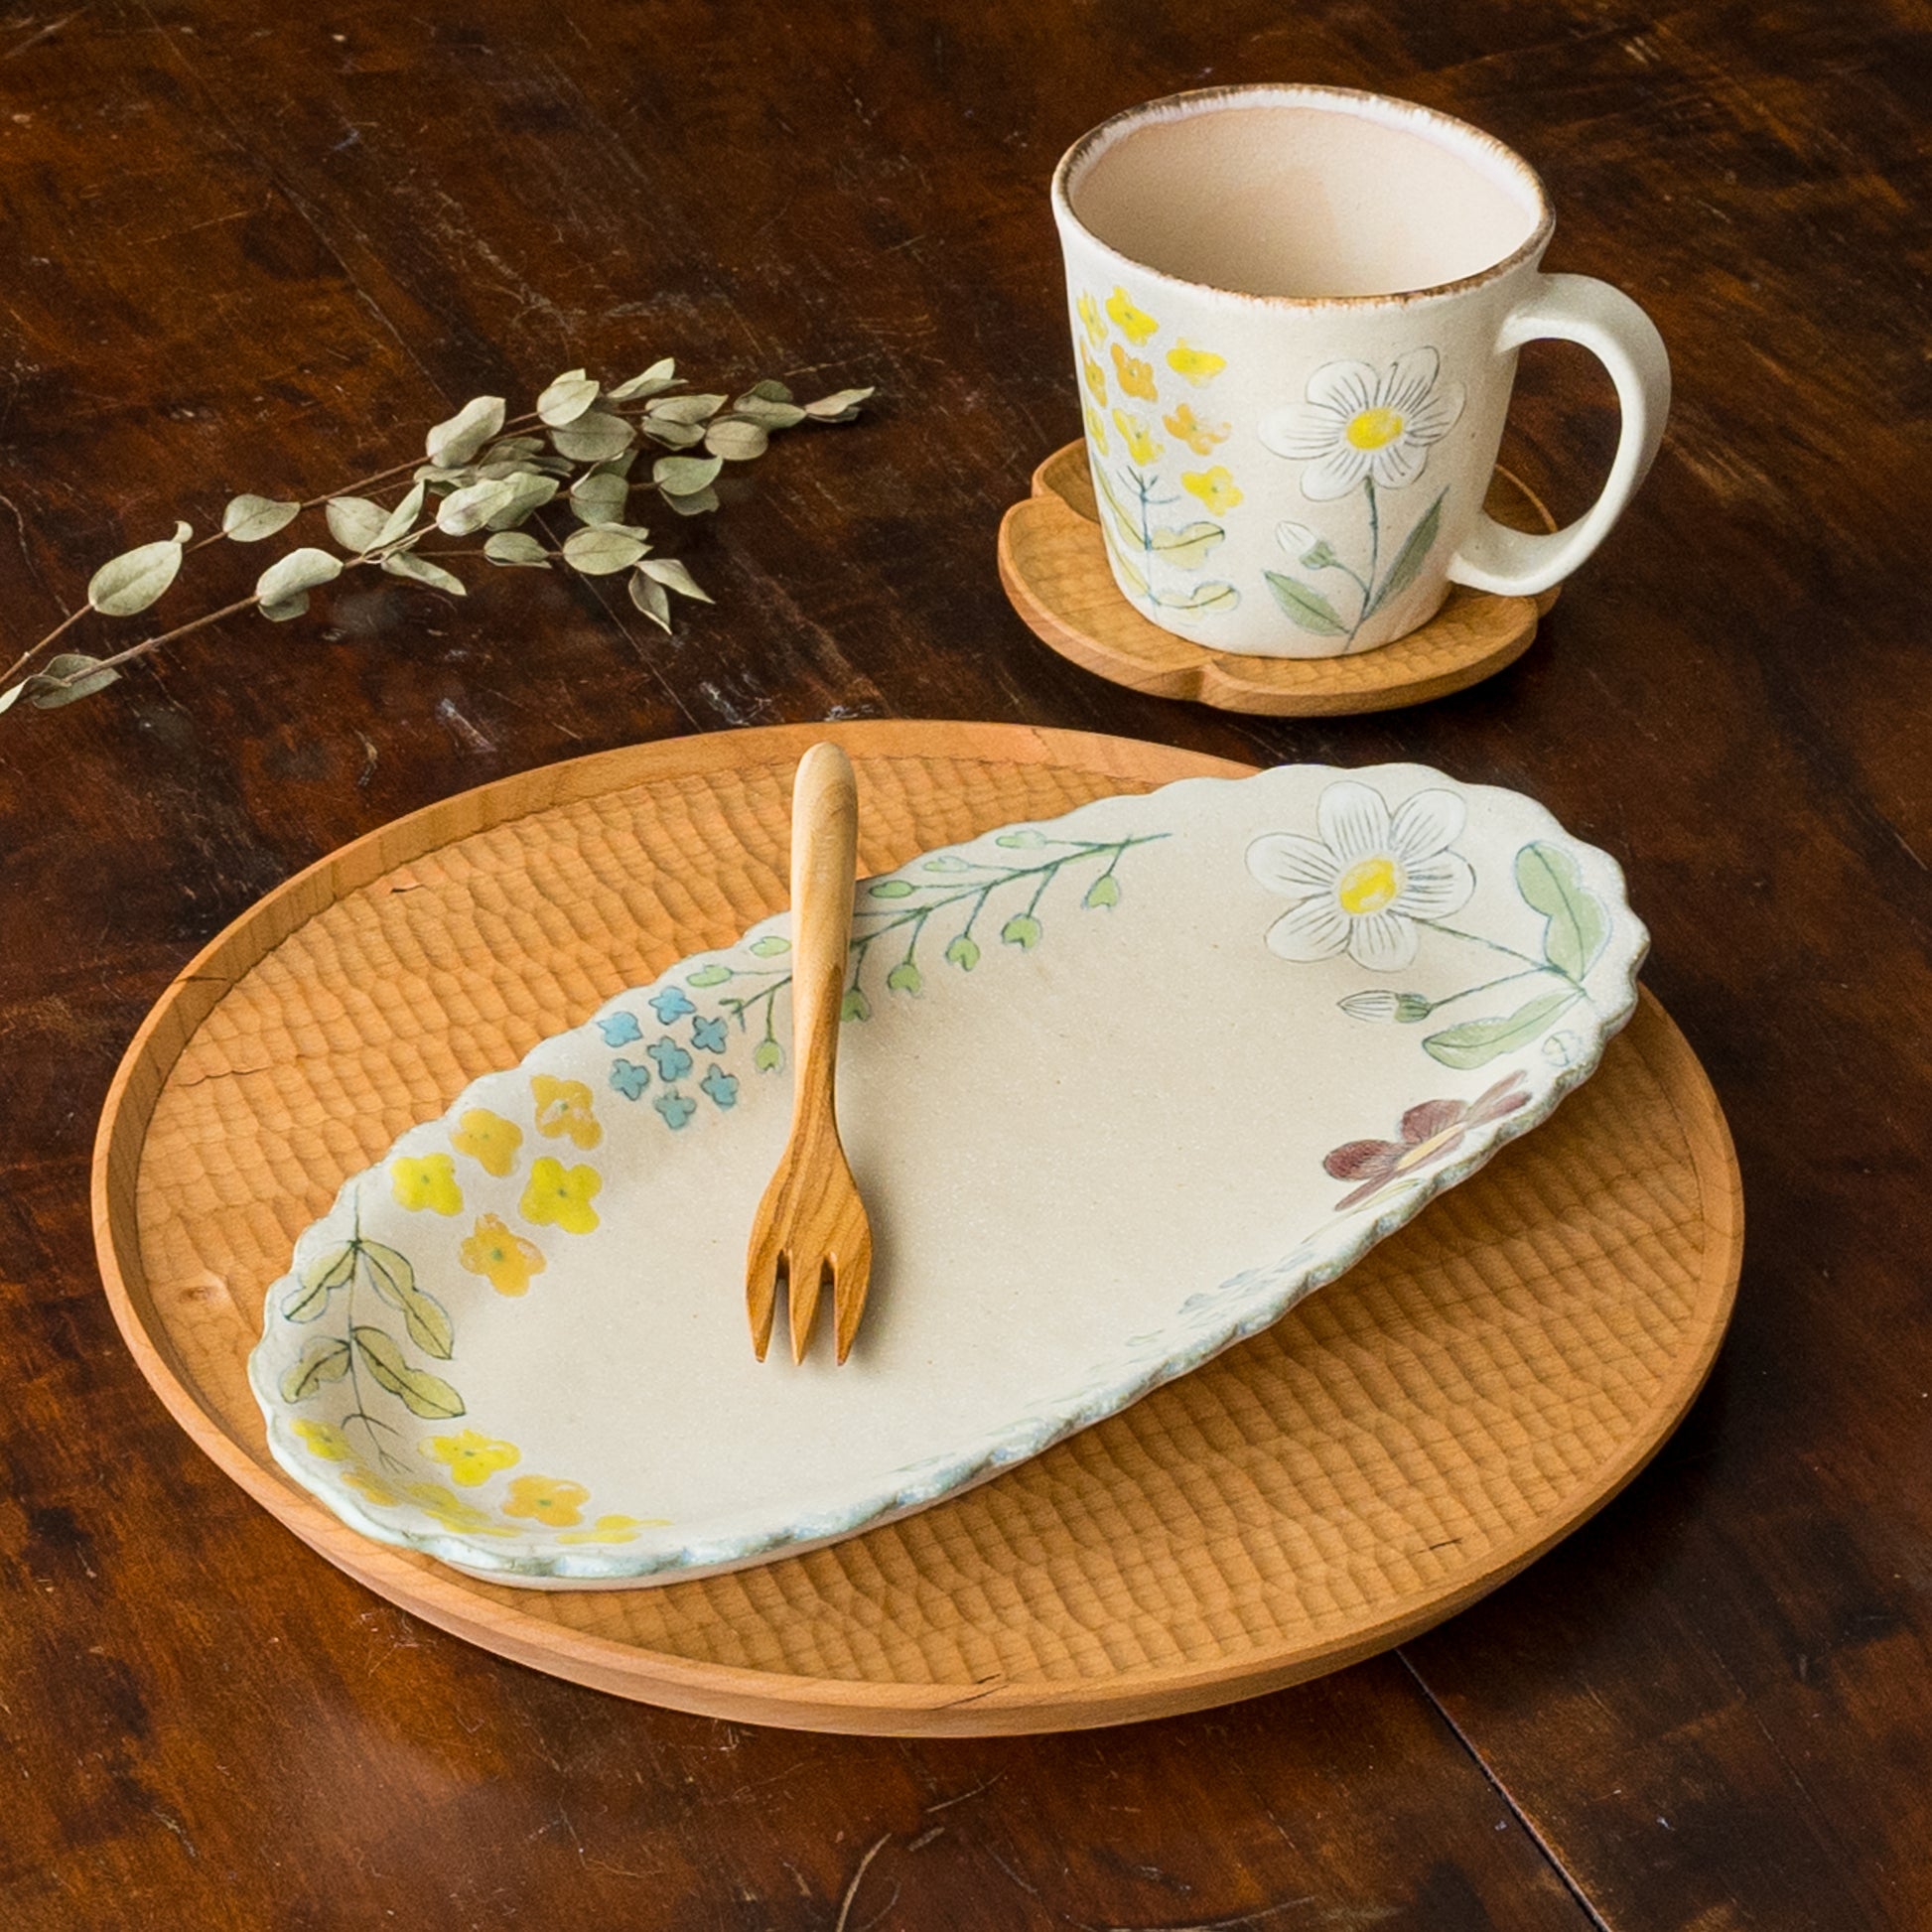 おうちで素敵なカフェ気分を味わえる森野奈津子さんの花模様の長皿とマグ